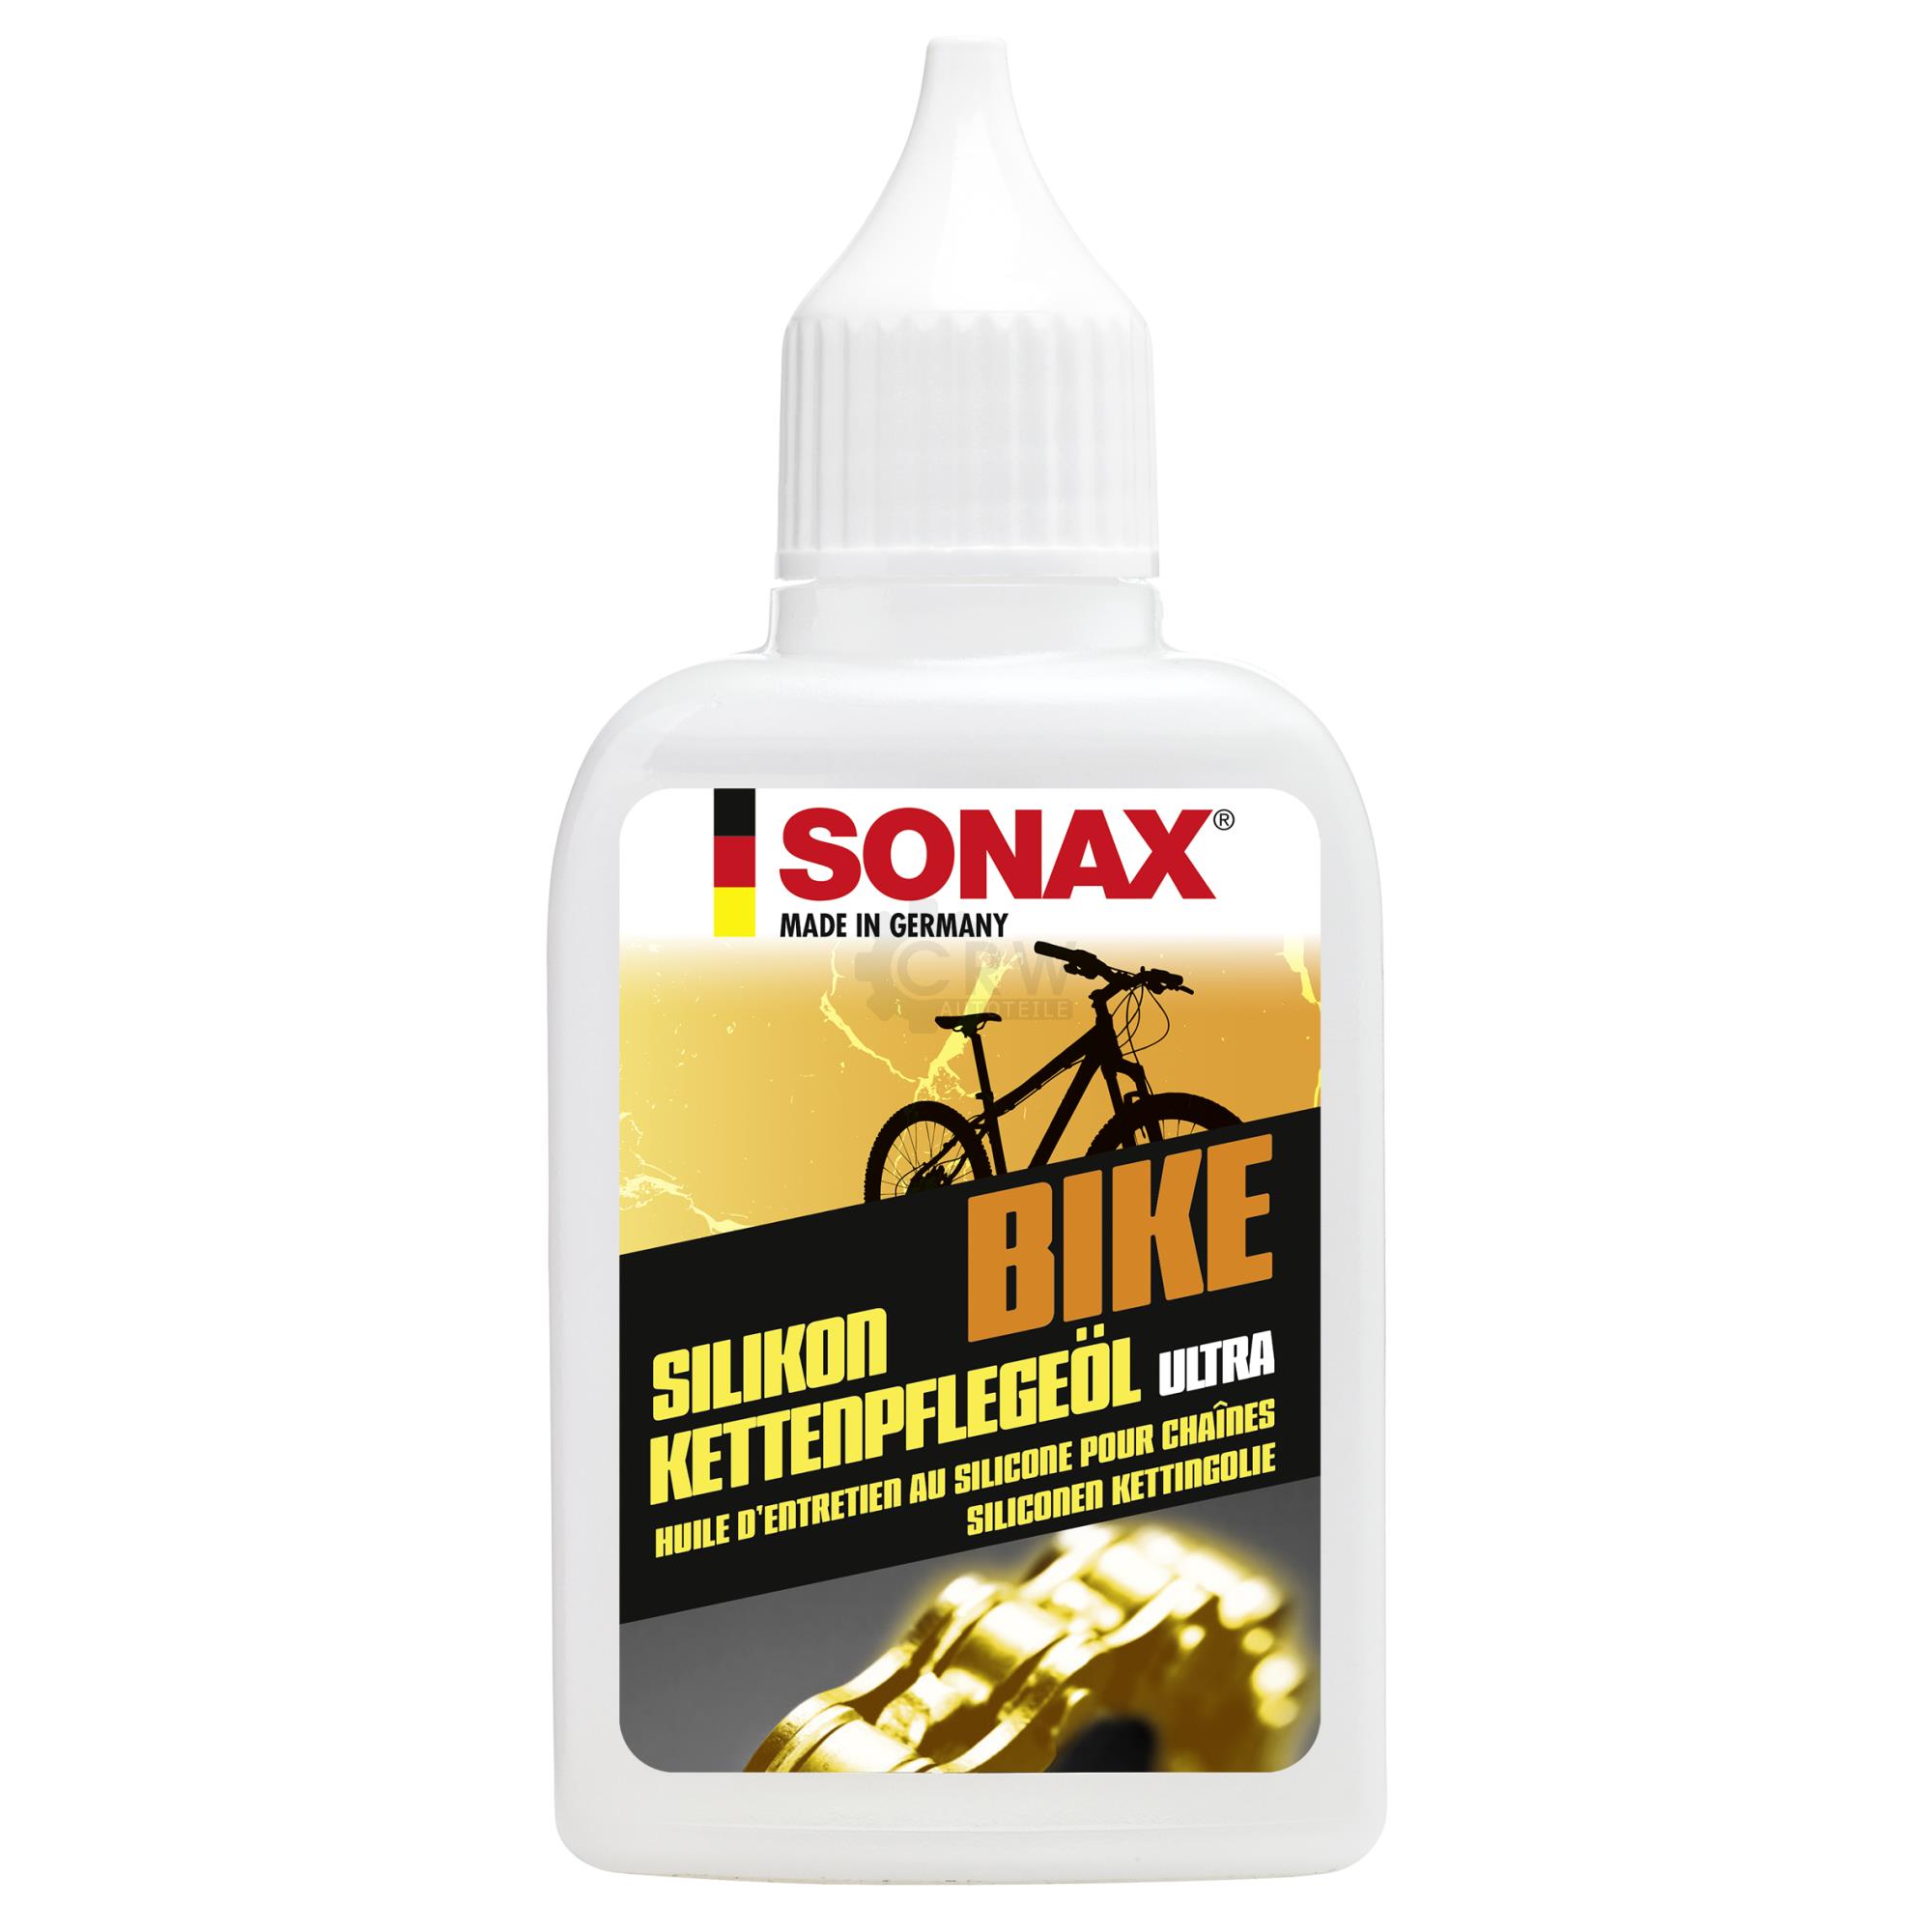 SONAX 08635410  BIKE Silikon KettenPflegeÖl Ultra 50 ml